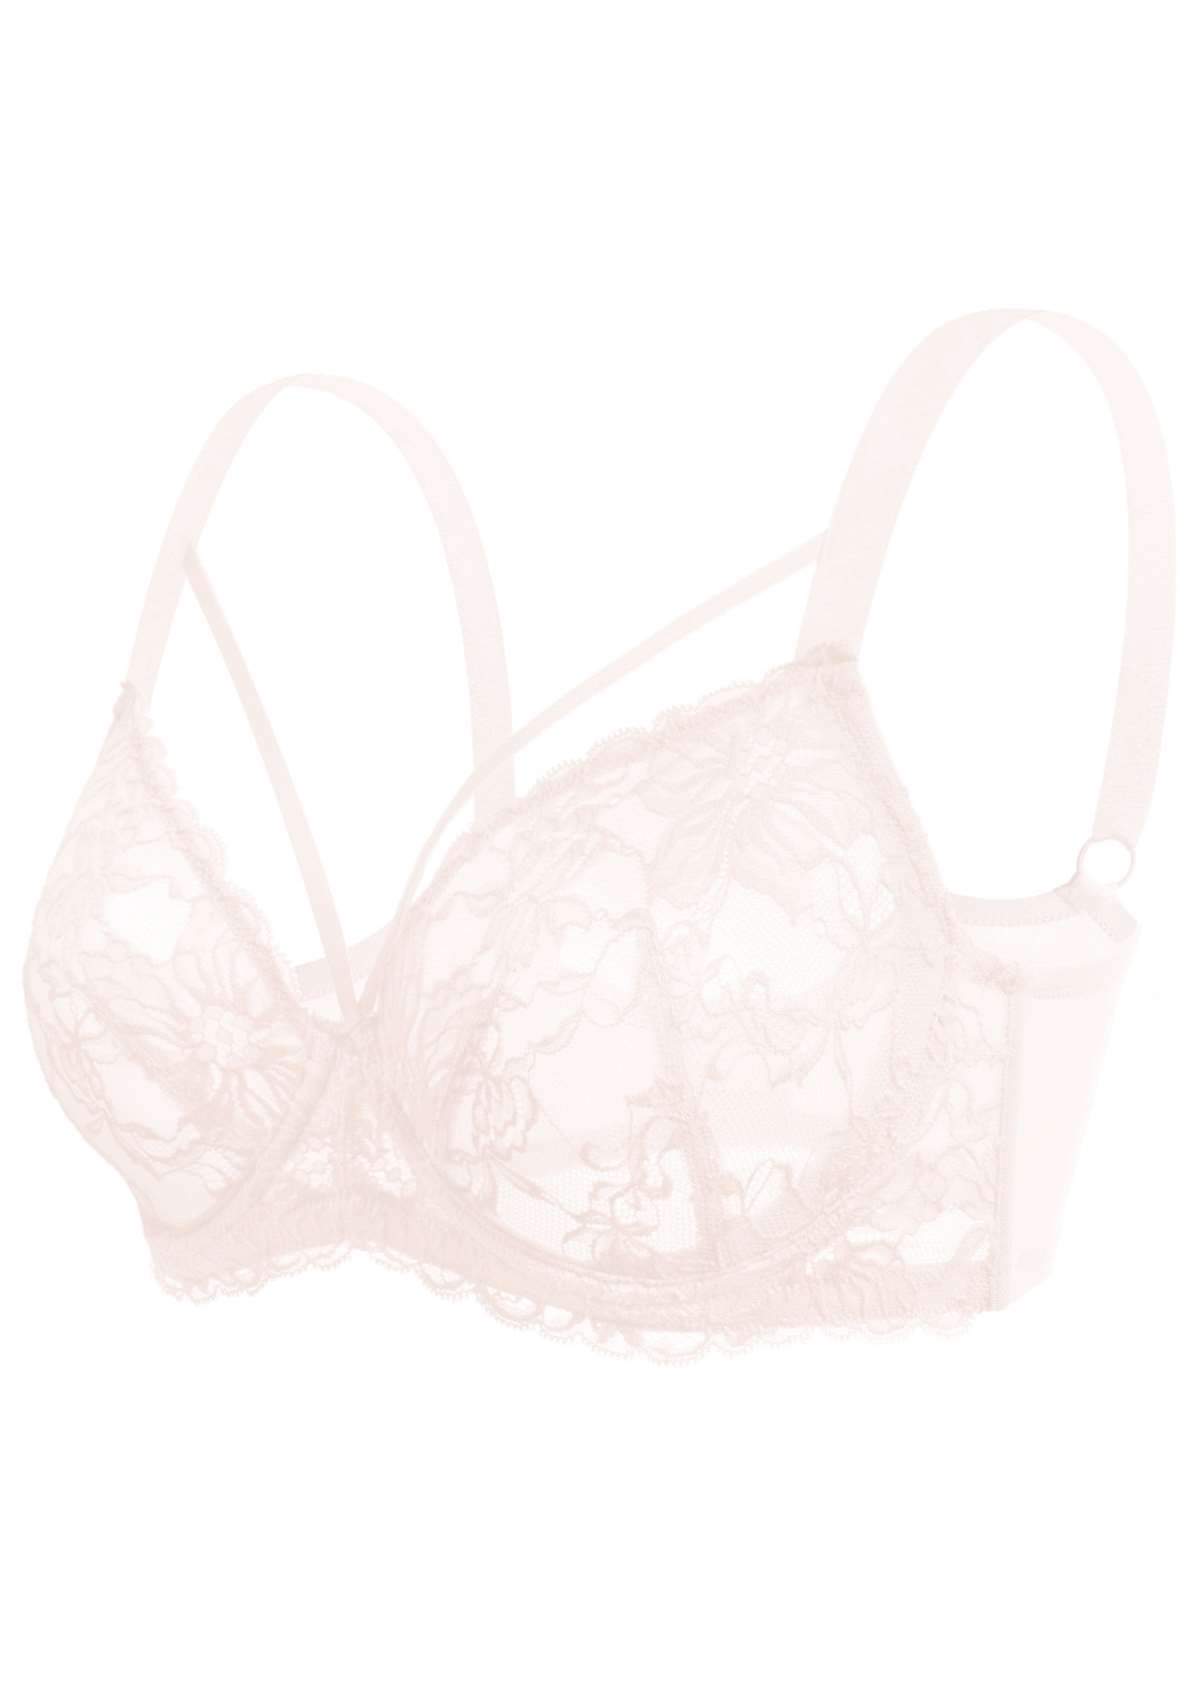 HSIA Pretty In Petals Underwire Lace Bra: No Padding, Full Cup Bra - Dusty Peach / 40 / D